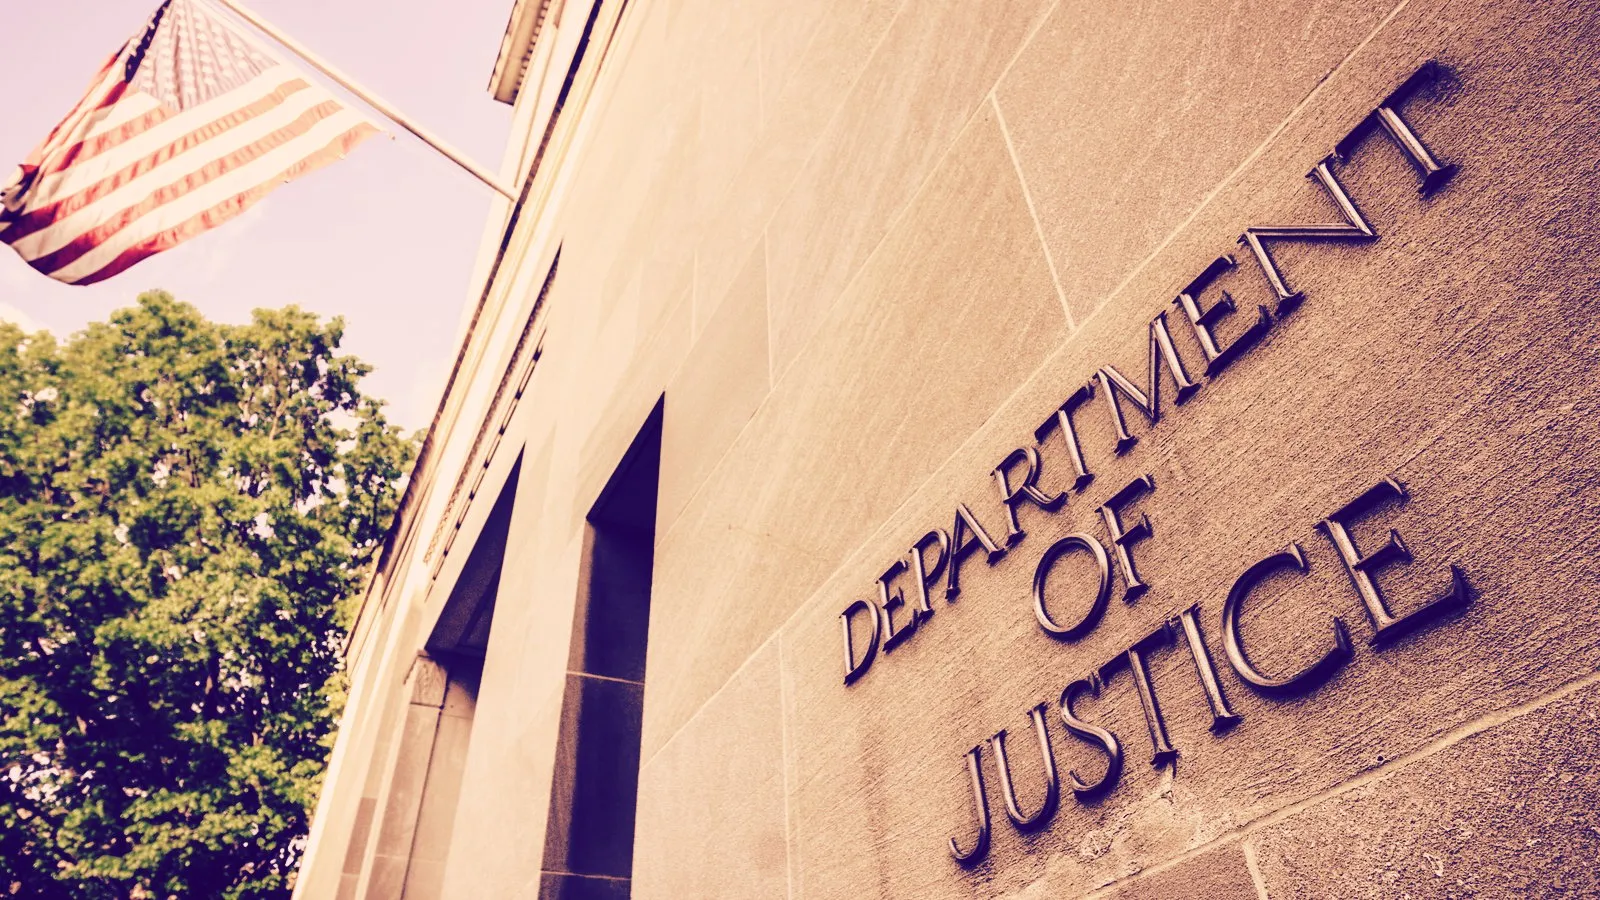 Departamento de Justicia. Imagen: Shutterstock